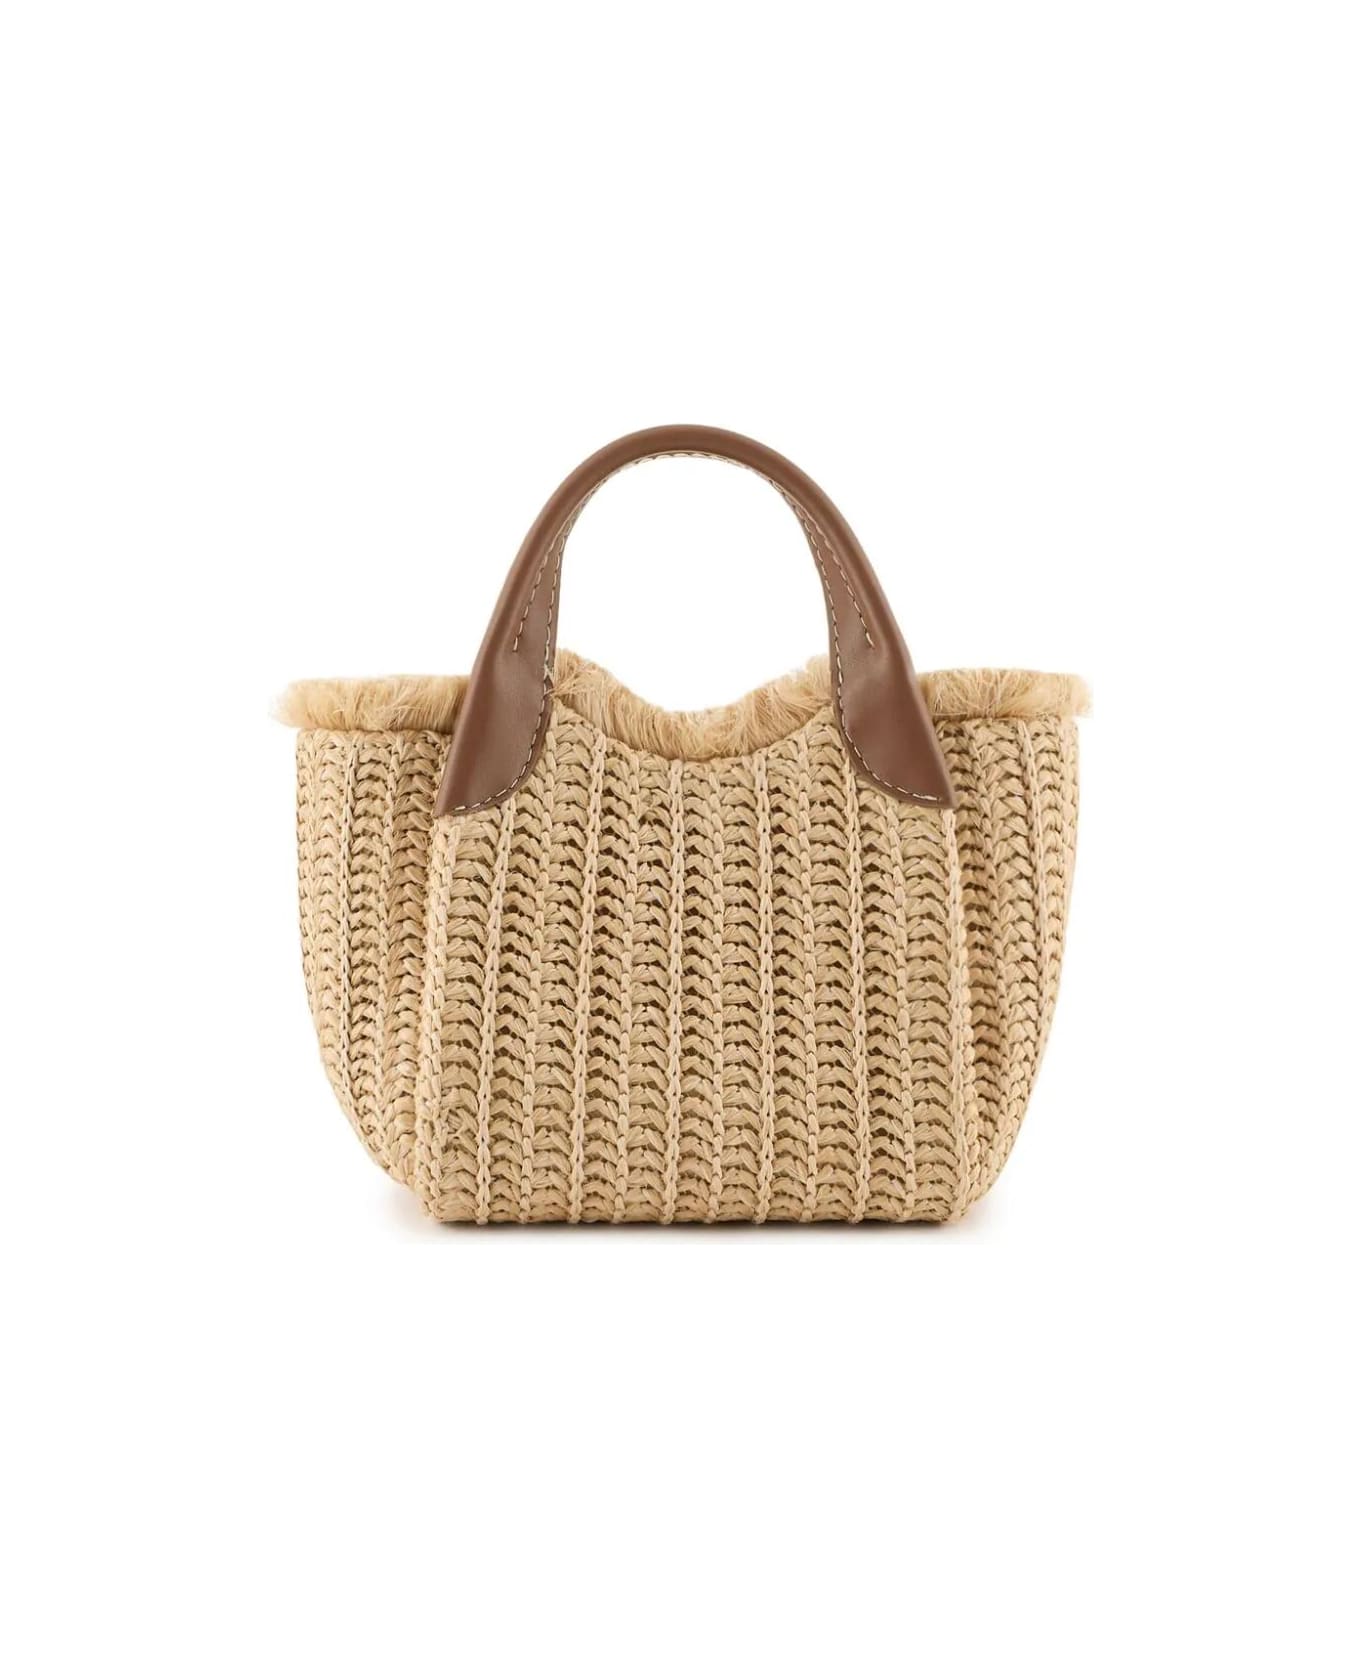 Emporio Armani Shopping Bag - Natural